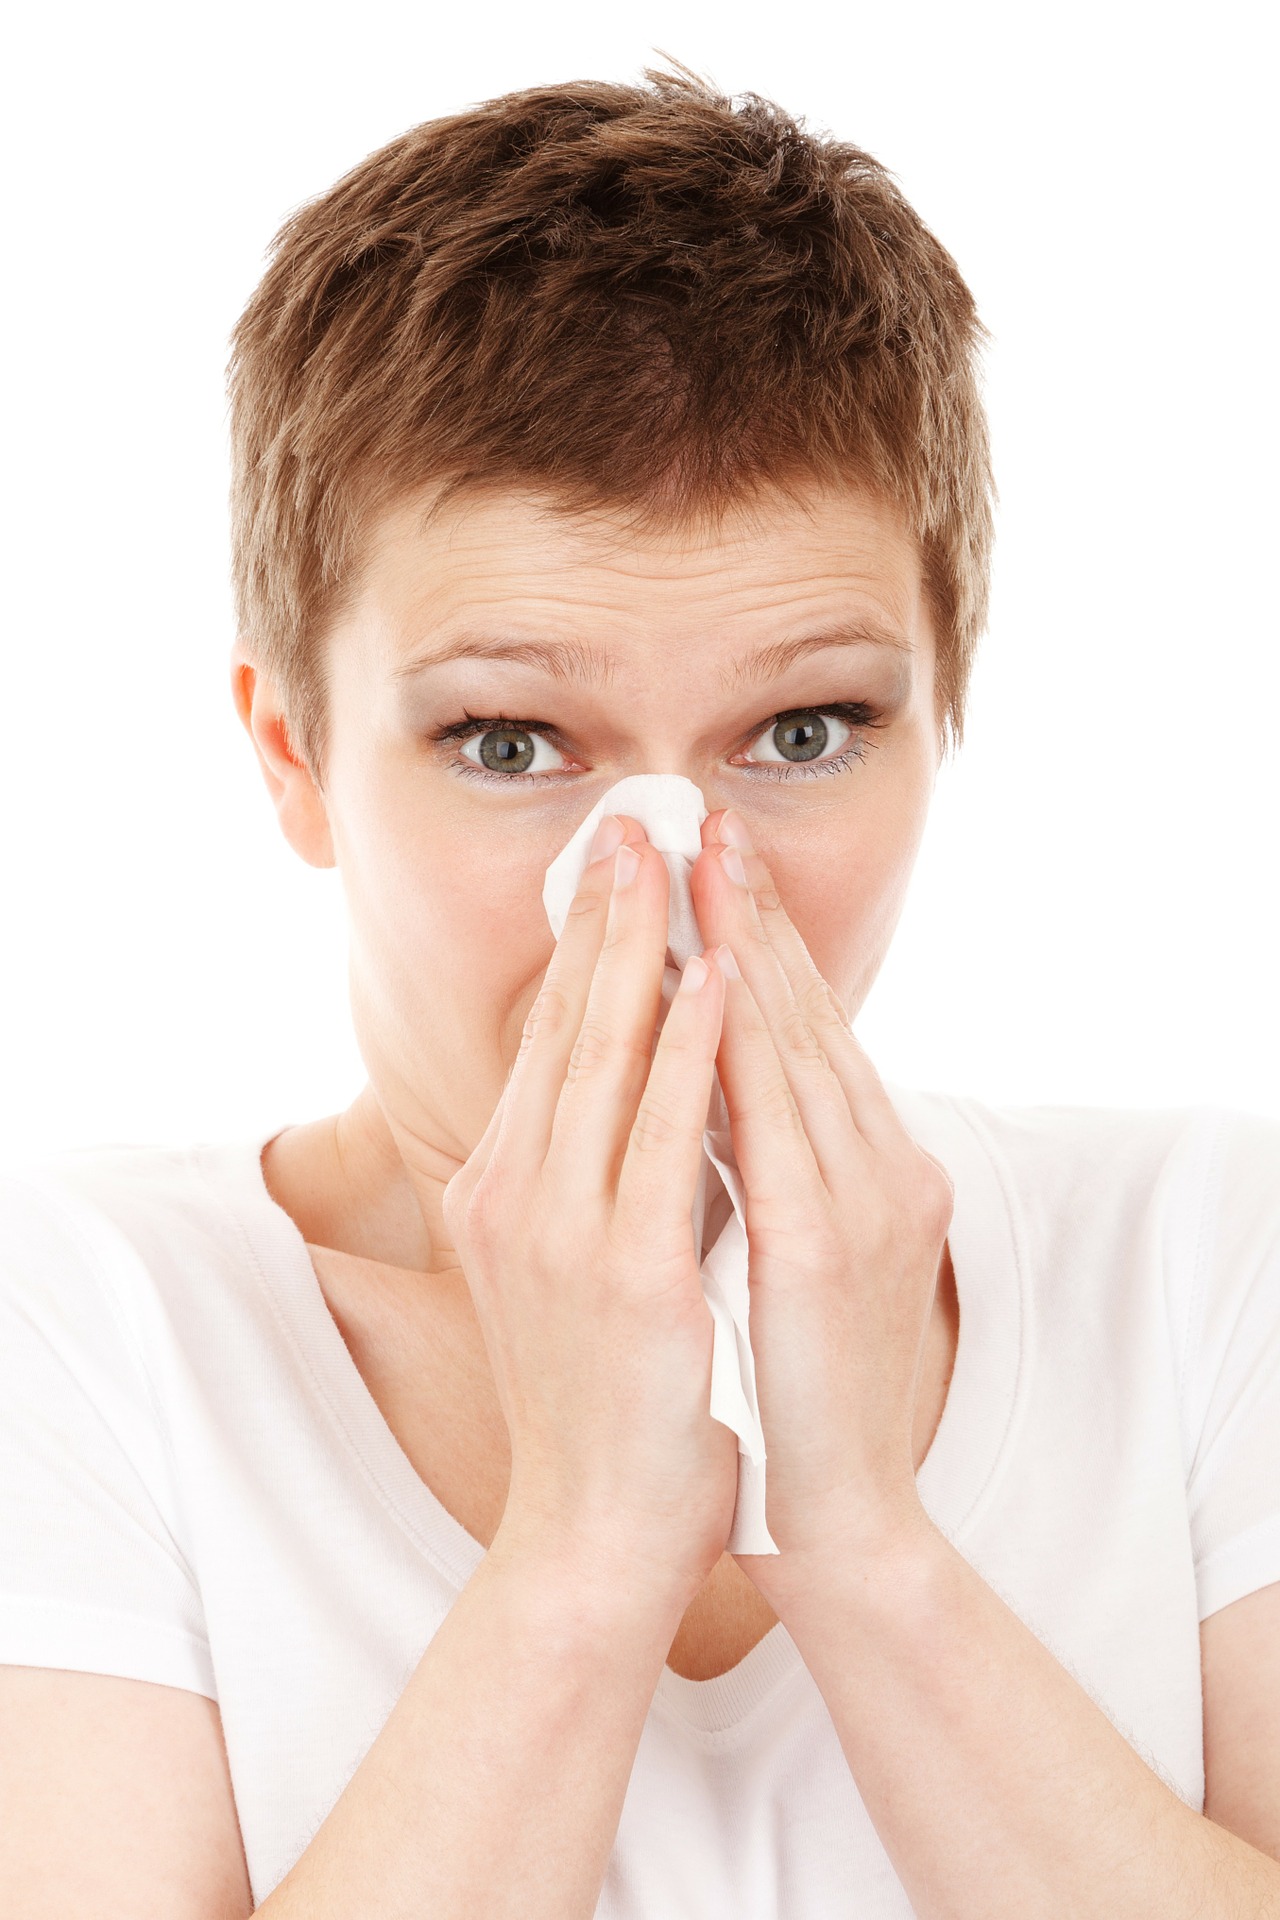 Nez bouché : causes et traitements pour le déboucher